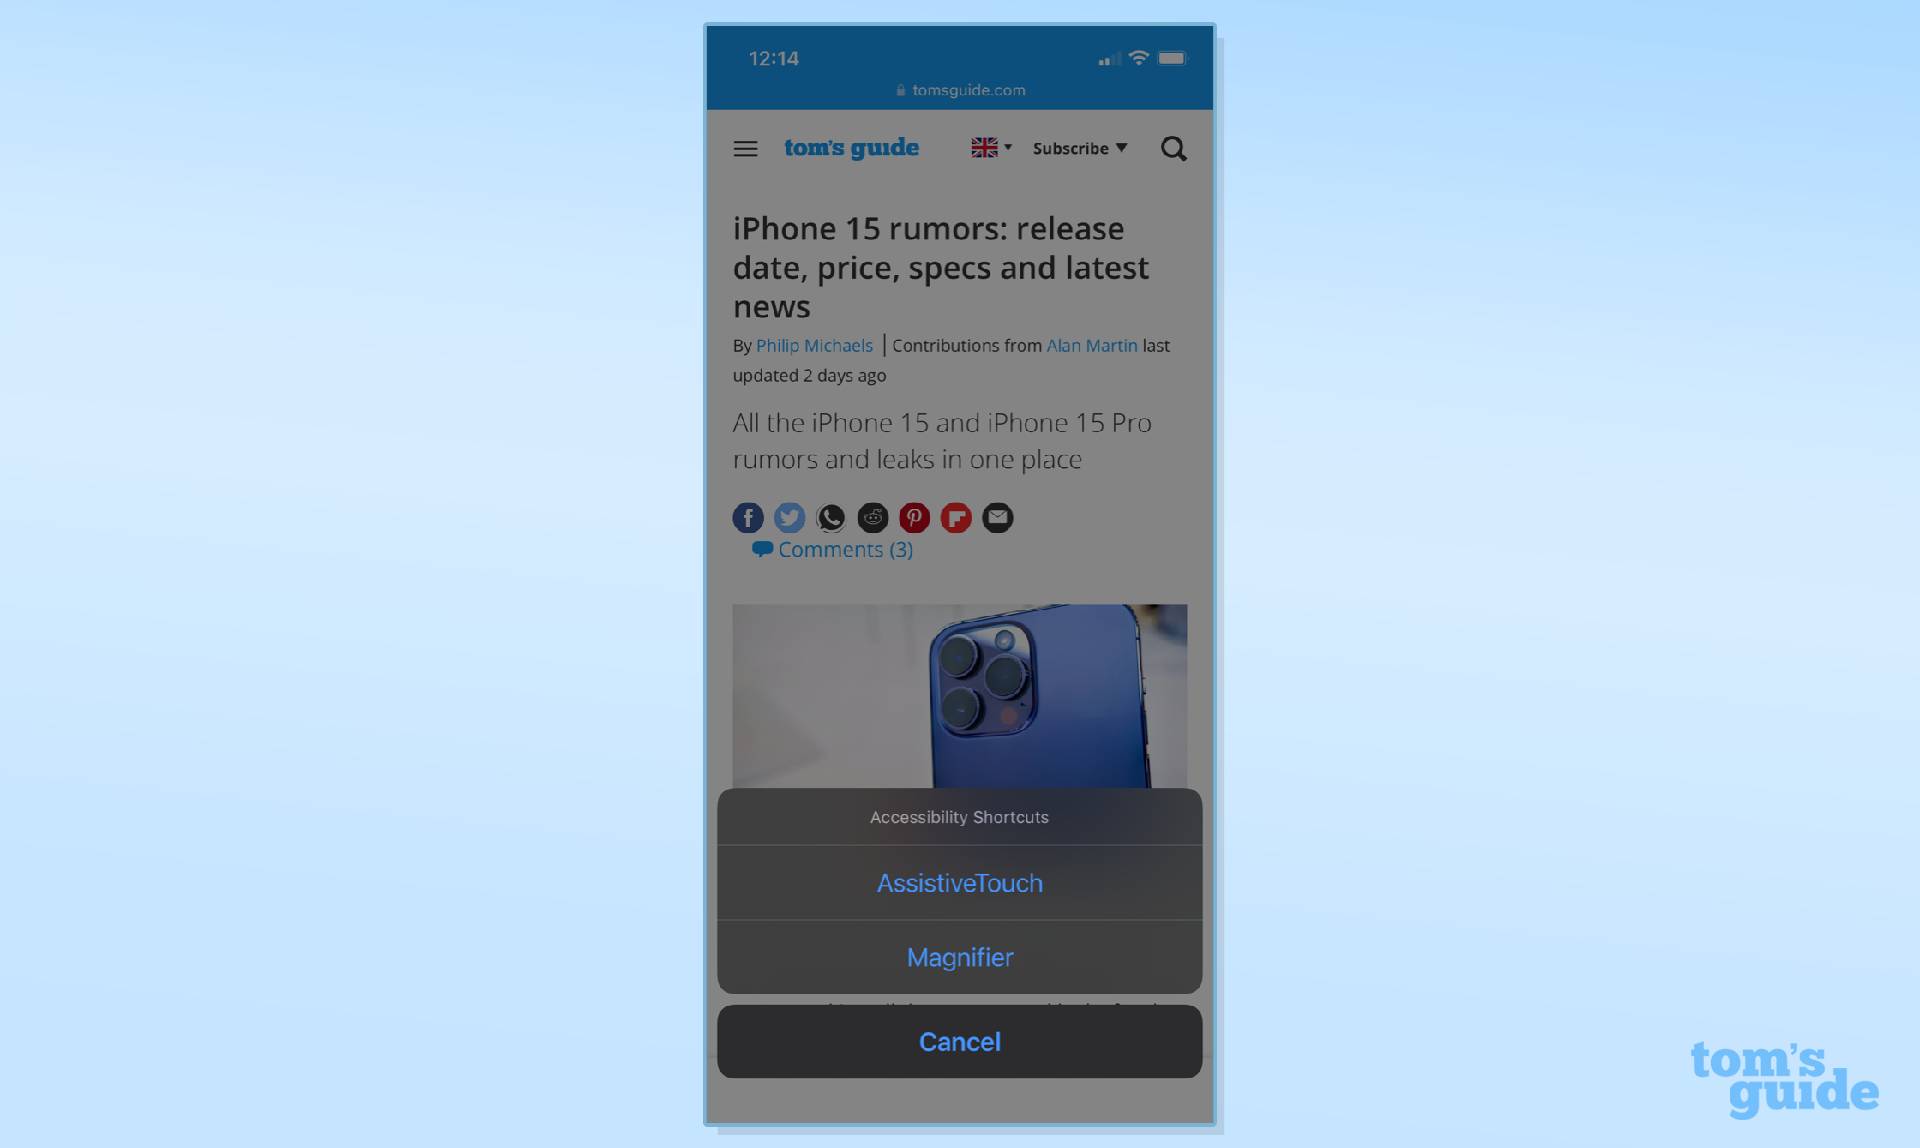 Снимок экрана iPhone, демонстрирующий шаги по использованию ярлыка специальных возможностей.